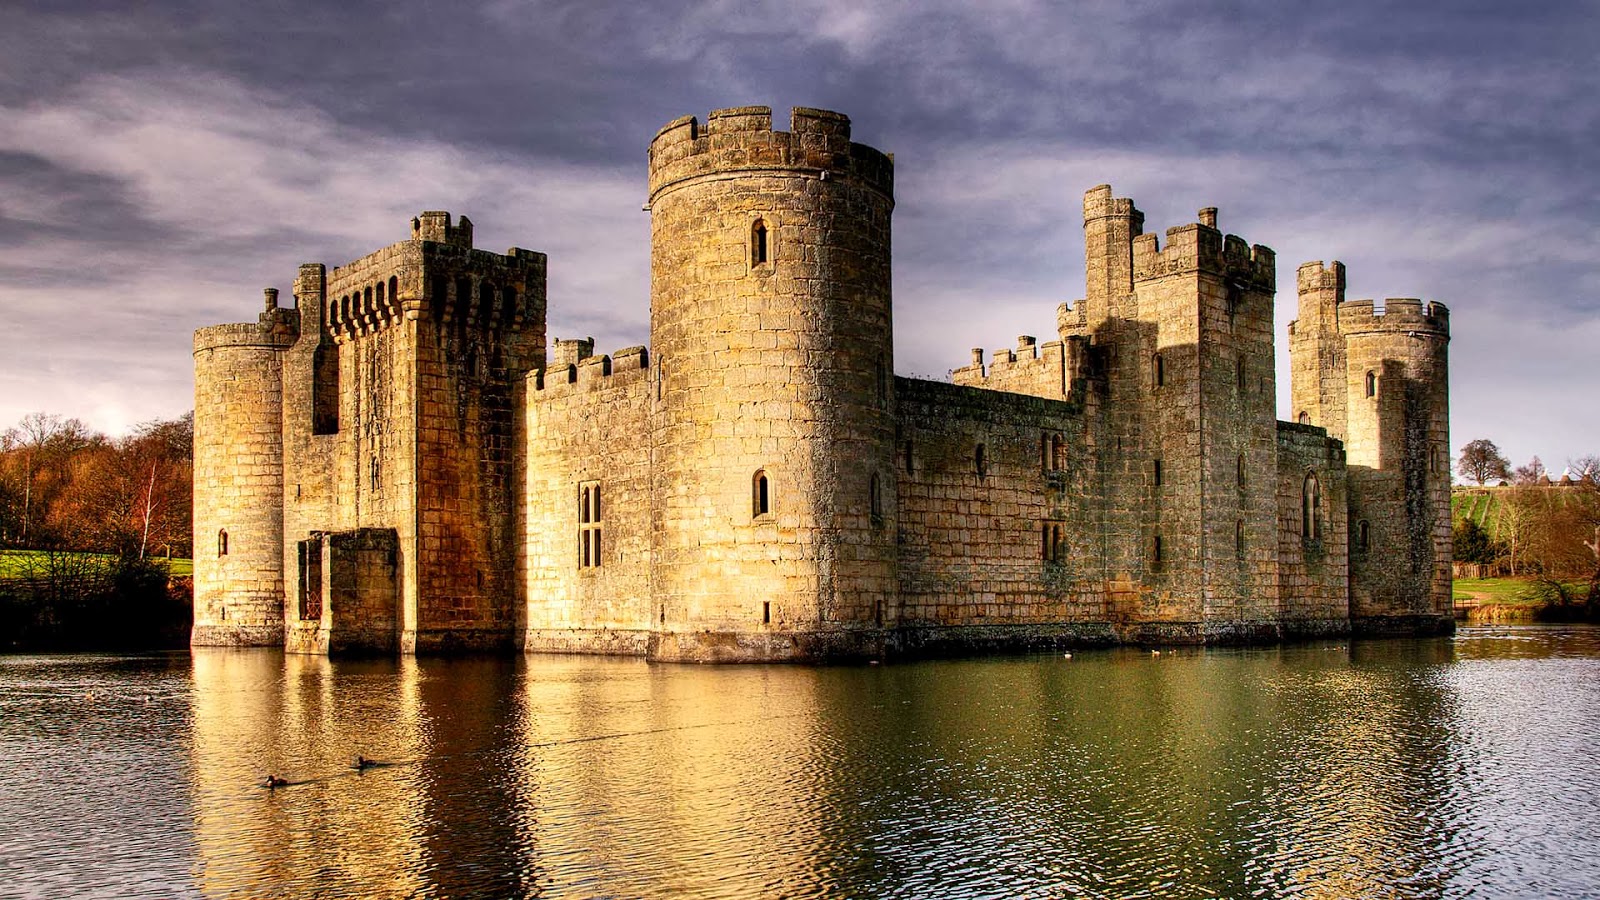 castello wallpaper hd,corso d'acqua,castello,castello d'acqua,fortificazione,architettura medievale